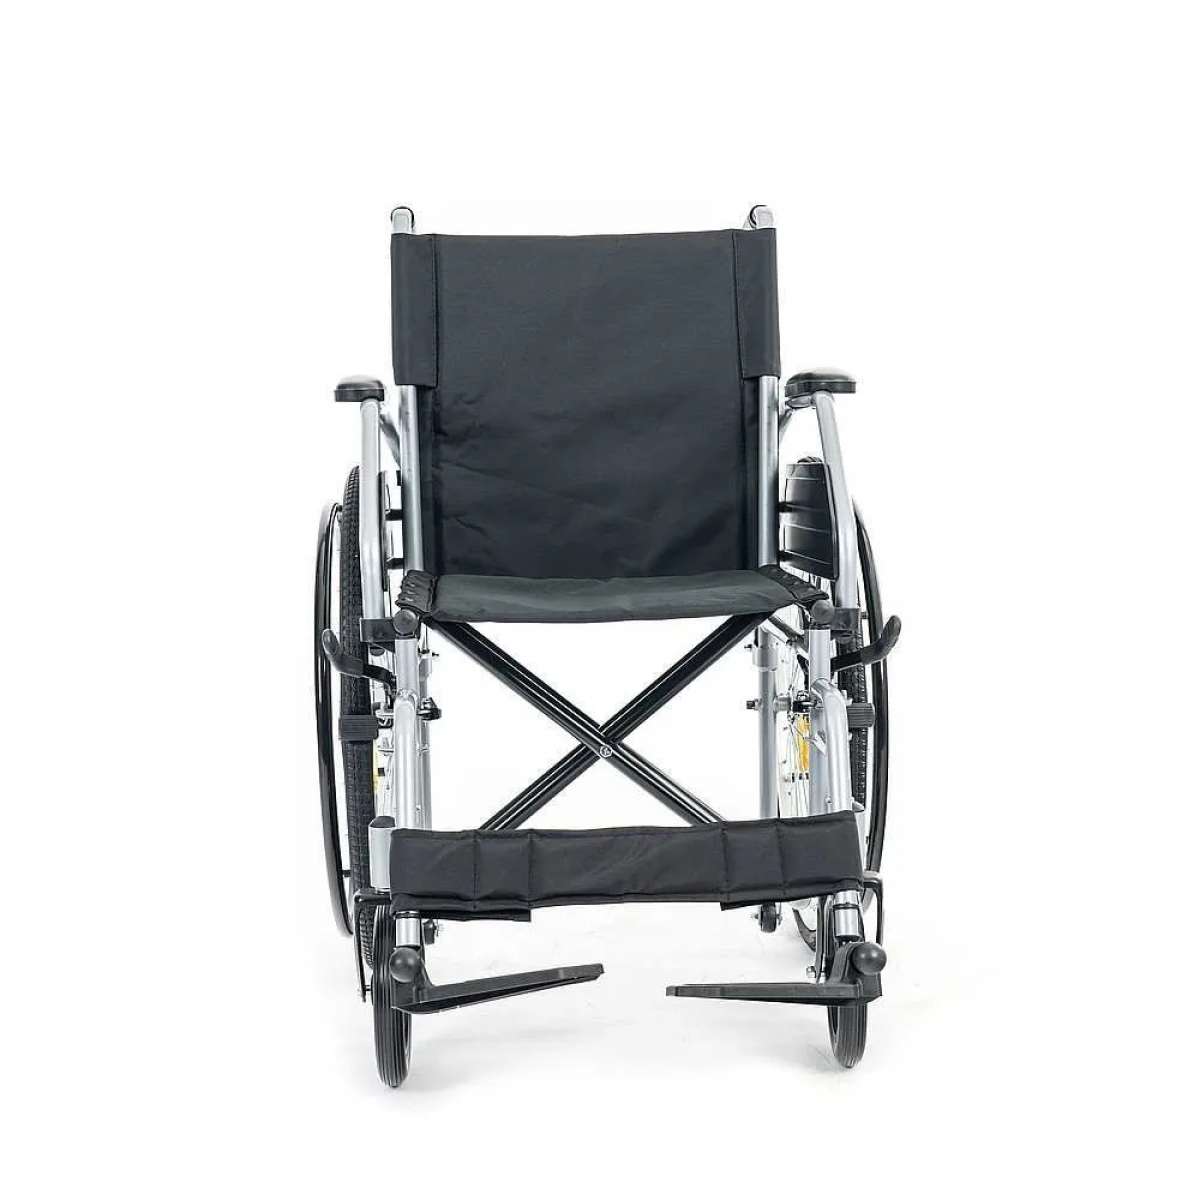 Инвалидная кресло-коляска с транзитными колёсами МЕТ TRANSIT 350 18981 112175